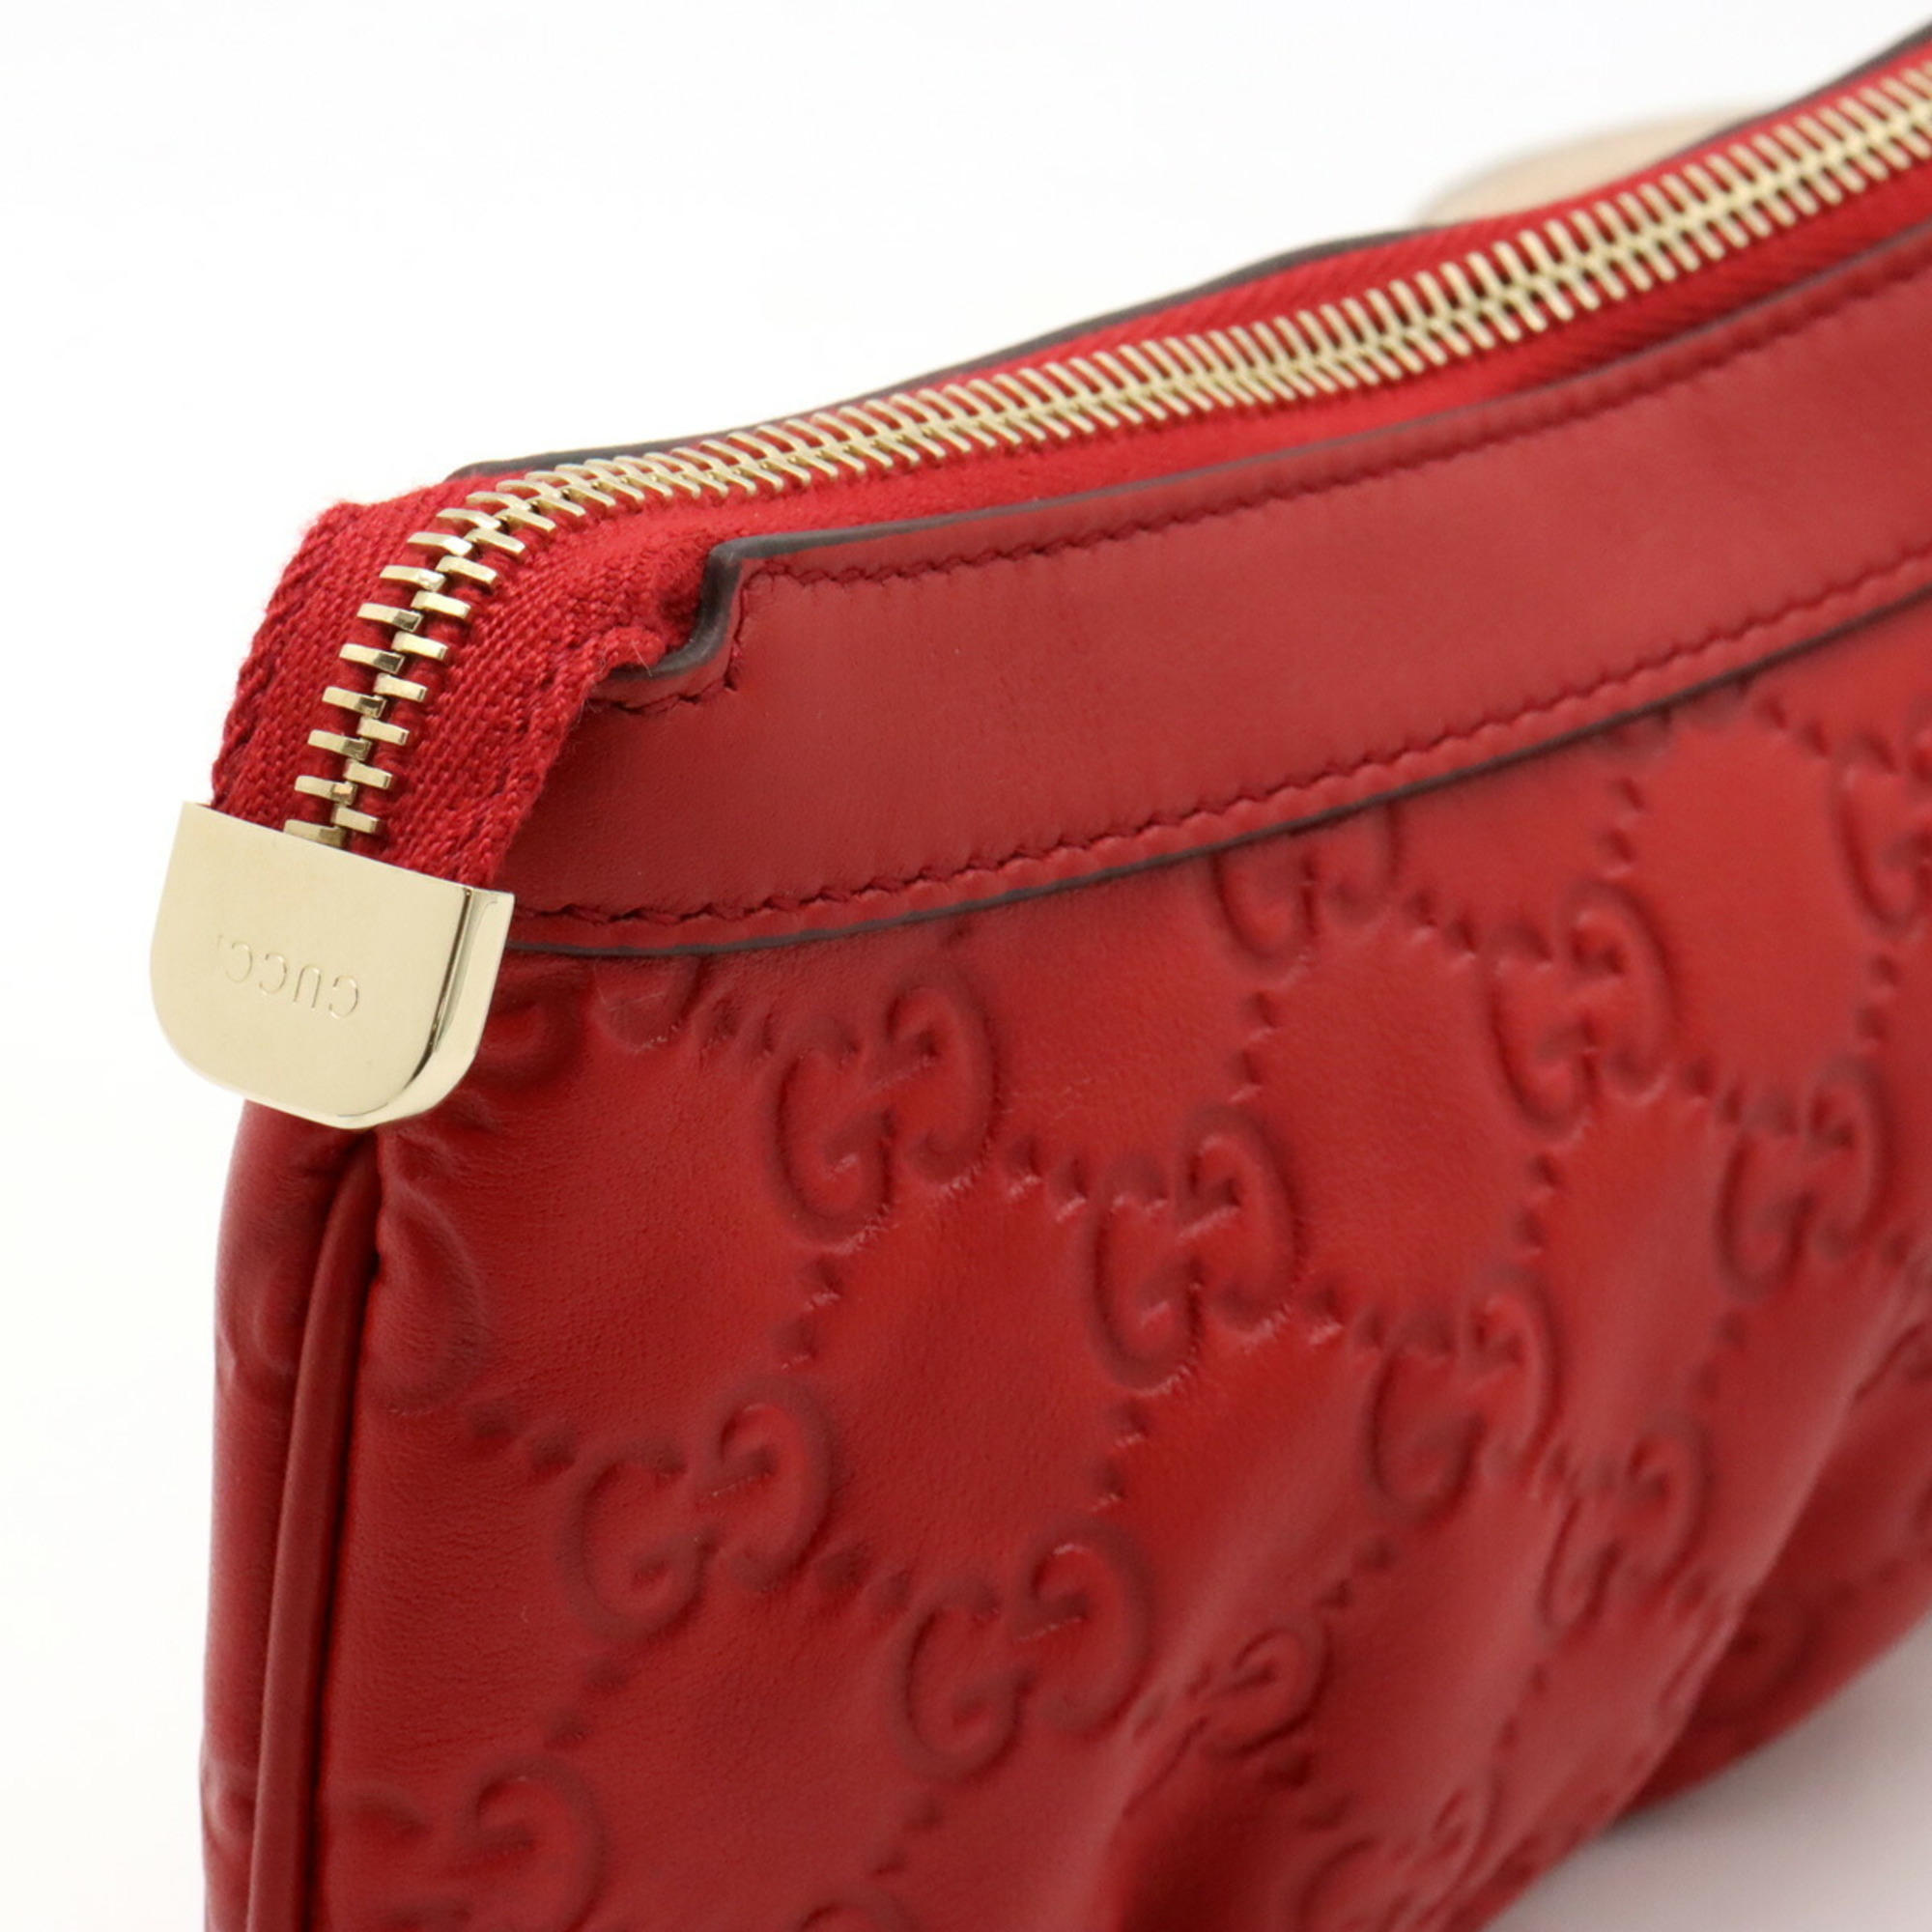 GUCCI Guccisima Pouch Multi Leather Red 212203